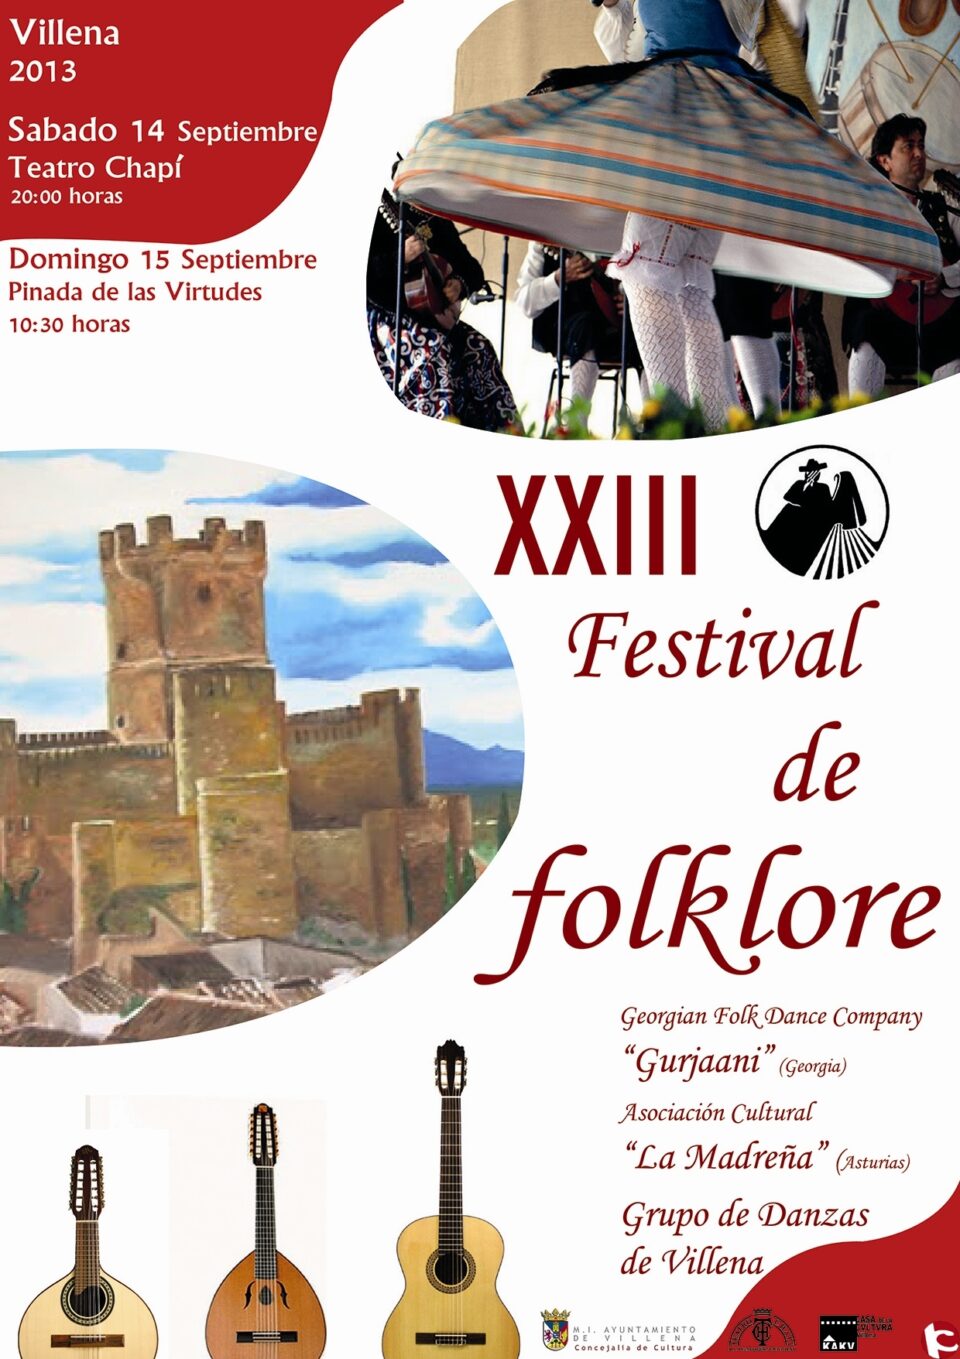 XXIII Festival de folklore en Villena